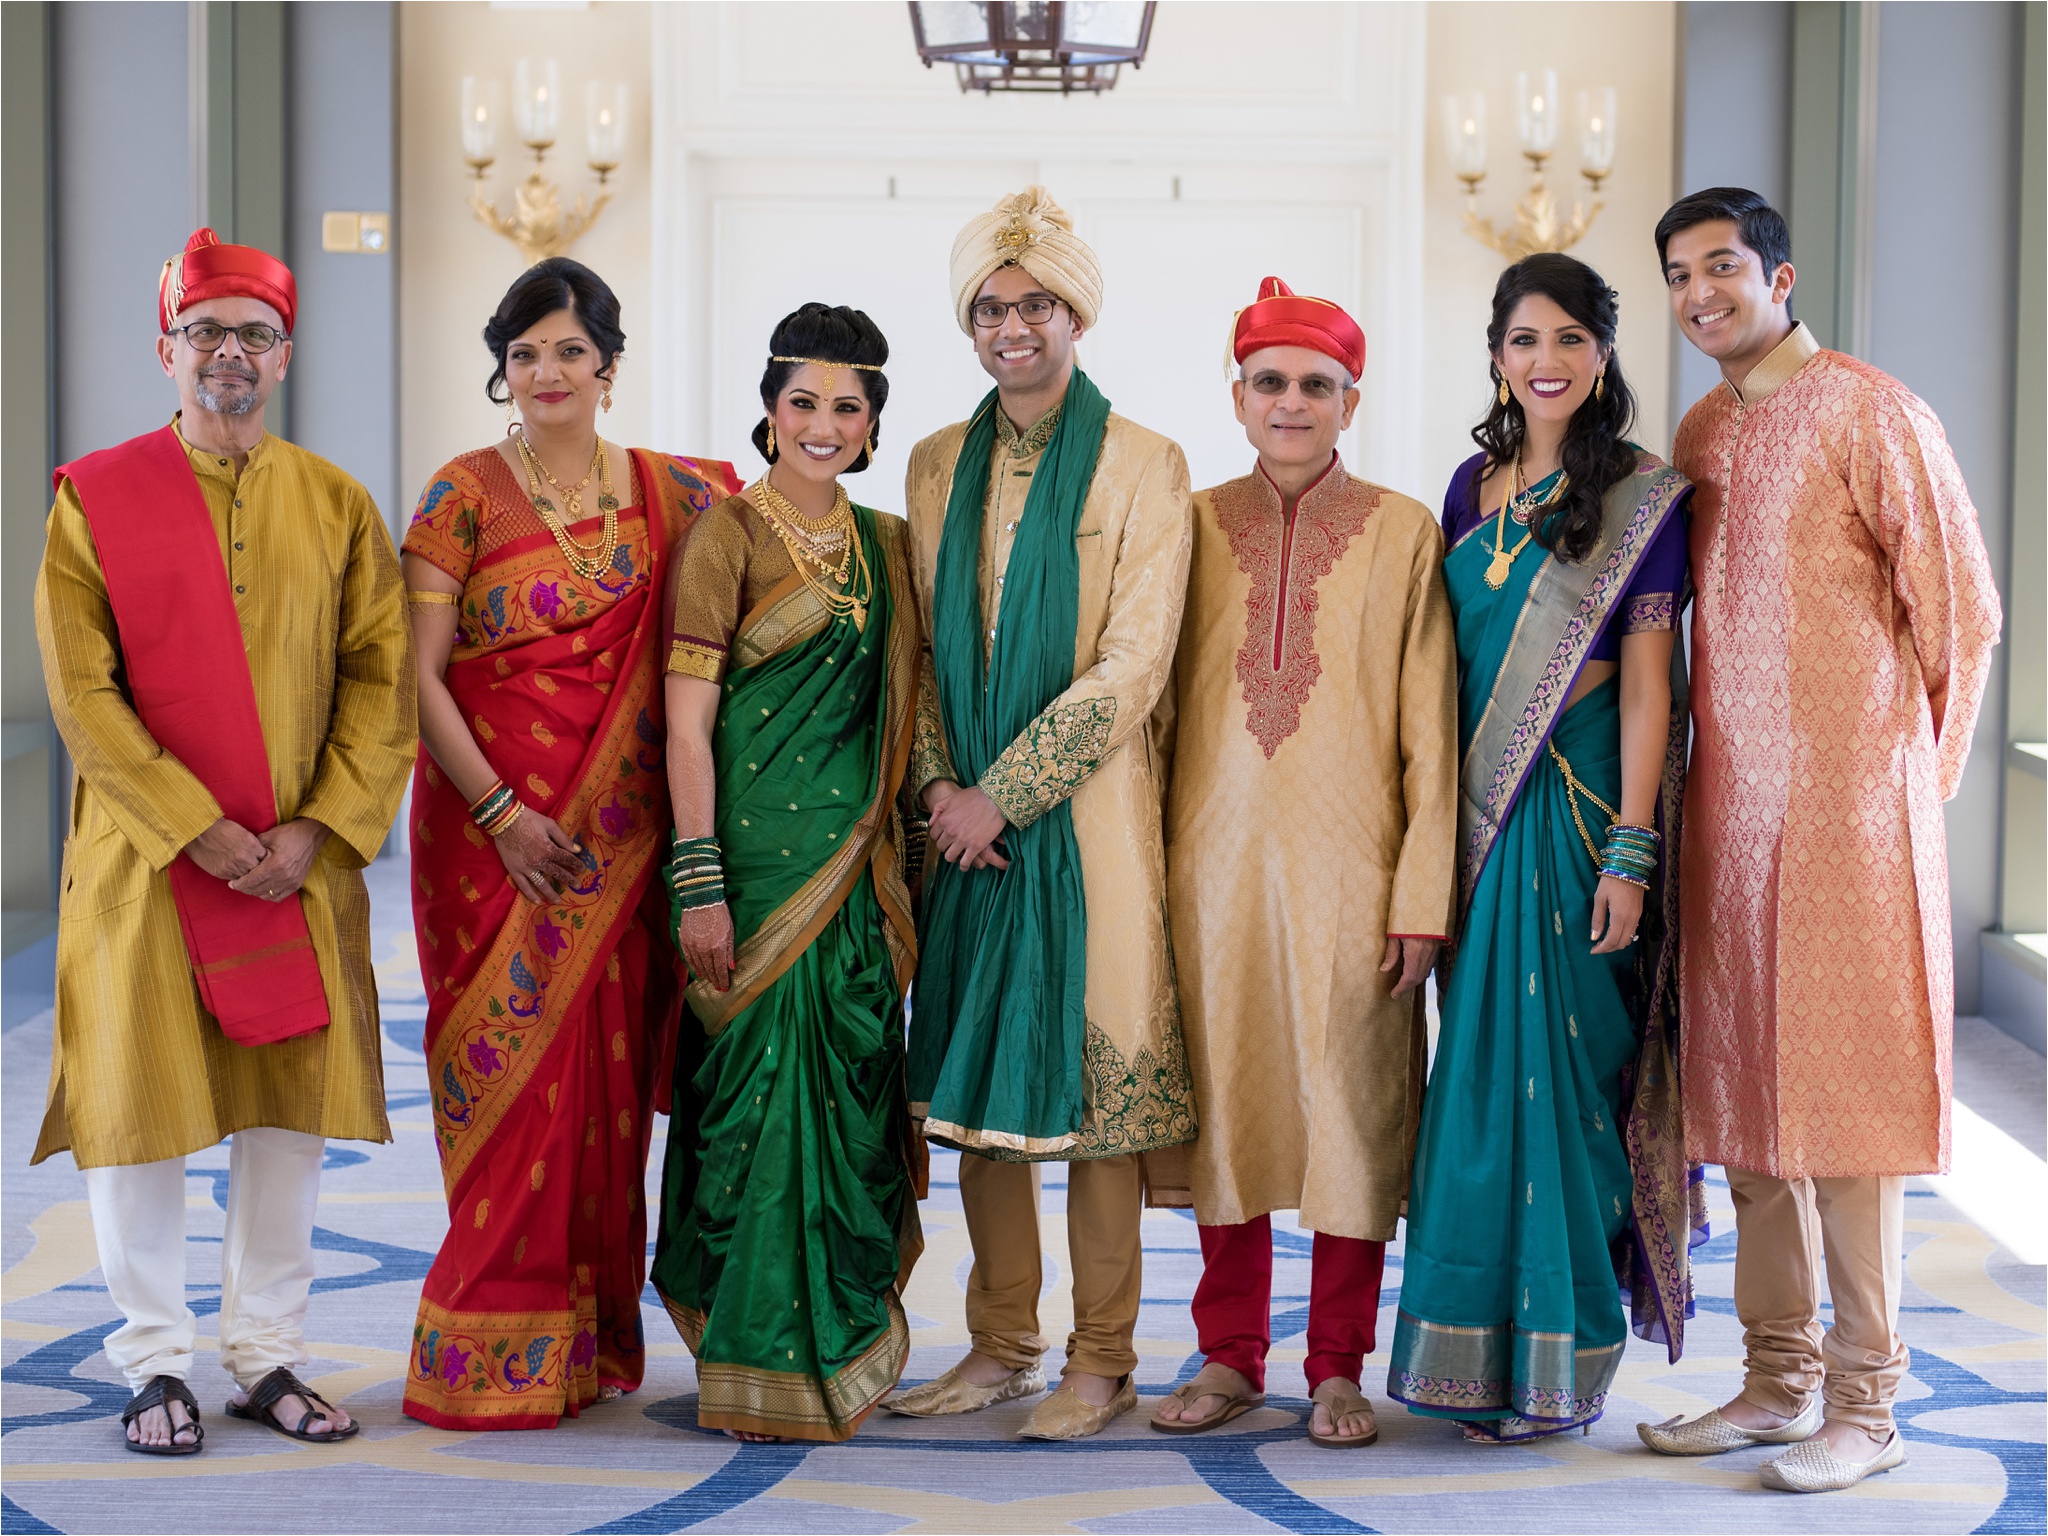 SanJose_Fairmont_Indian_Wedding_0030.jpg